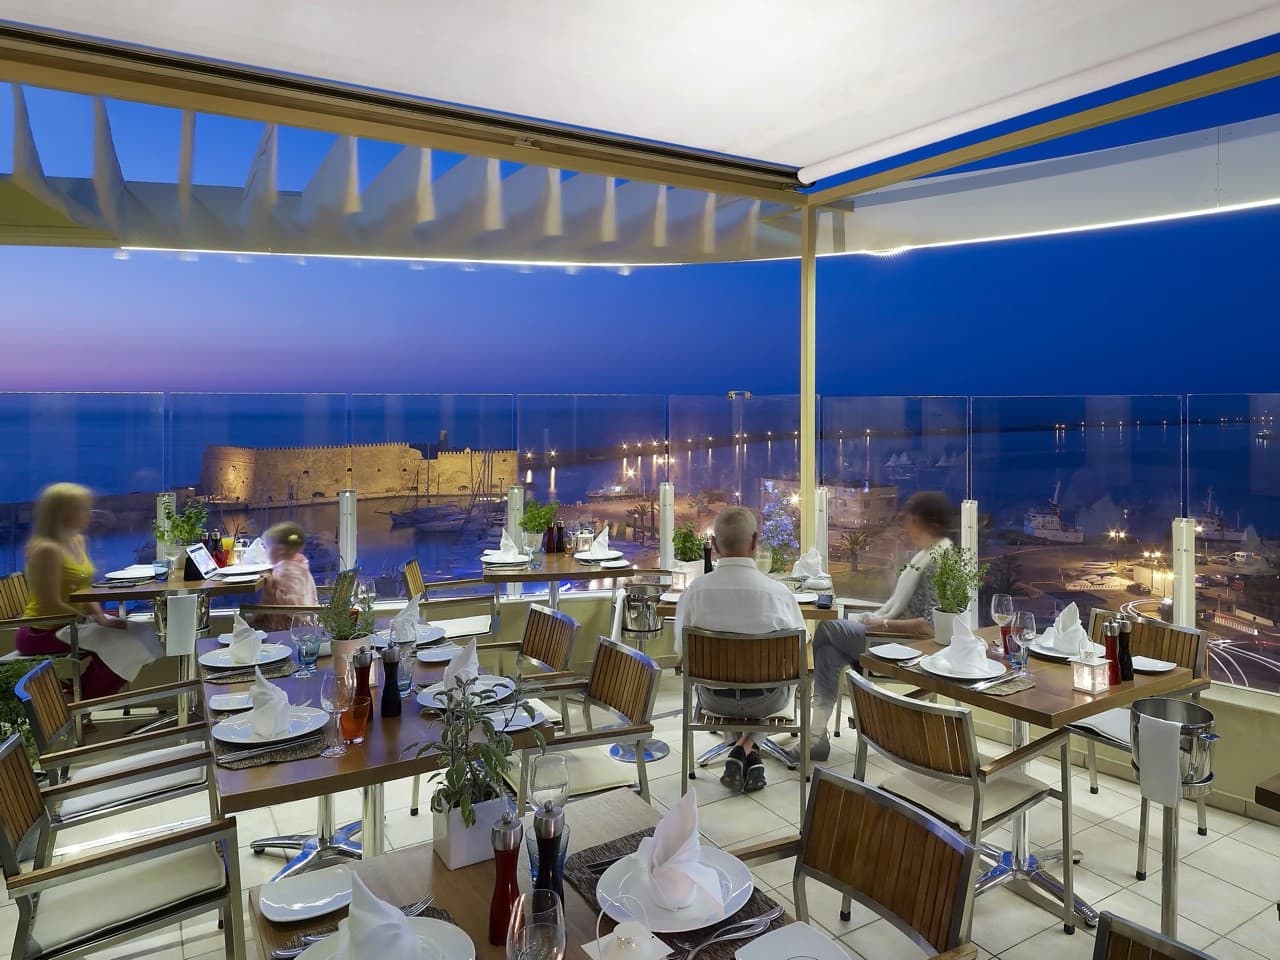 Herbs’ Garden Restaurant, Lato Boutique Hotel in Heraklion Crete, herbs restaurant heraklion, best restaurants iraklion crete